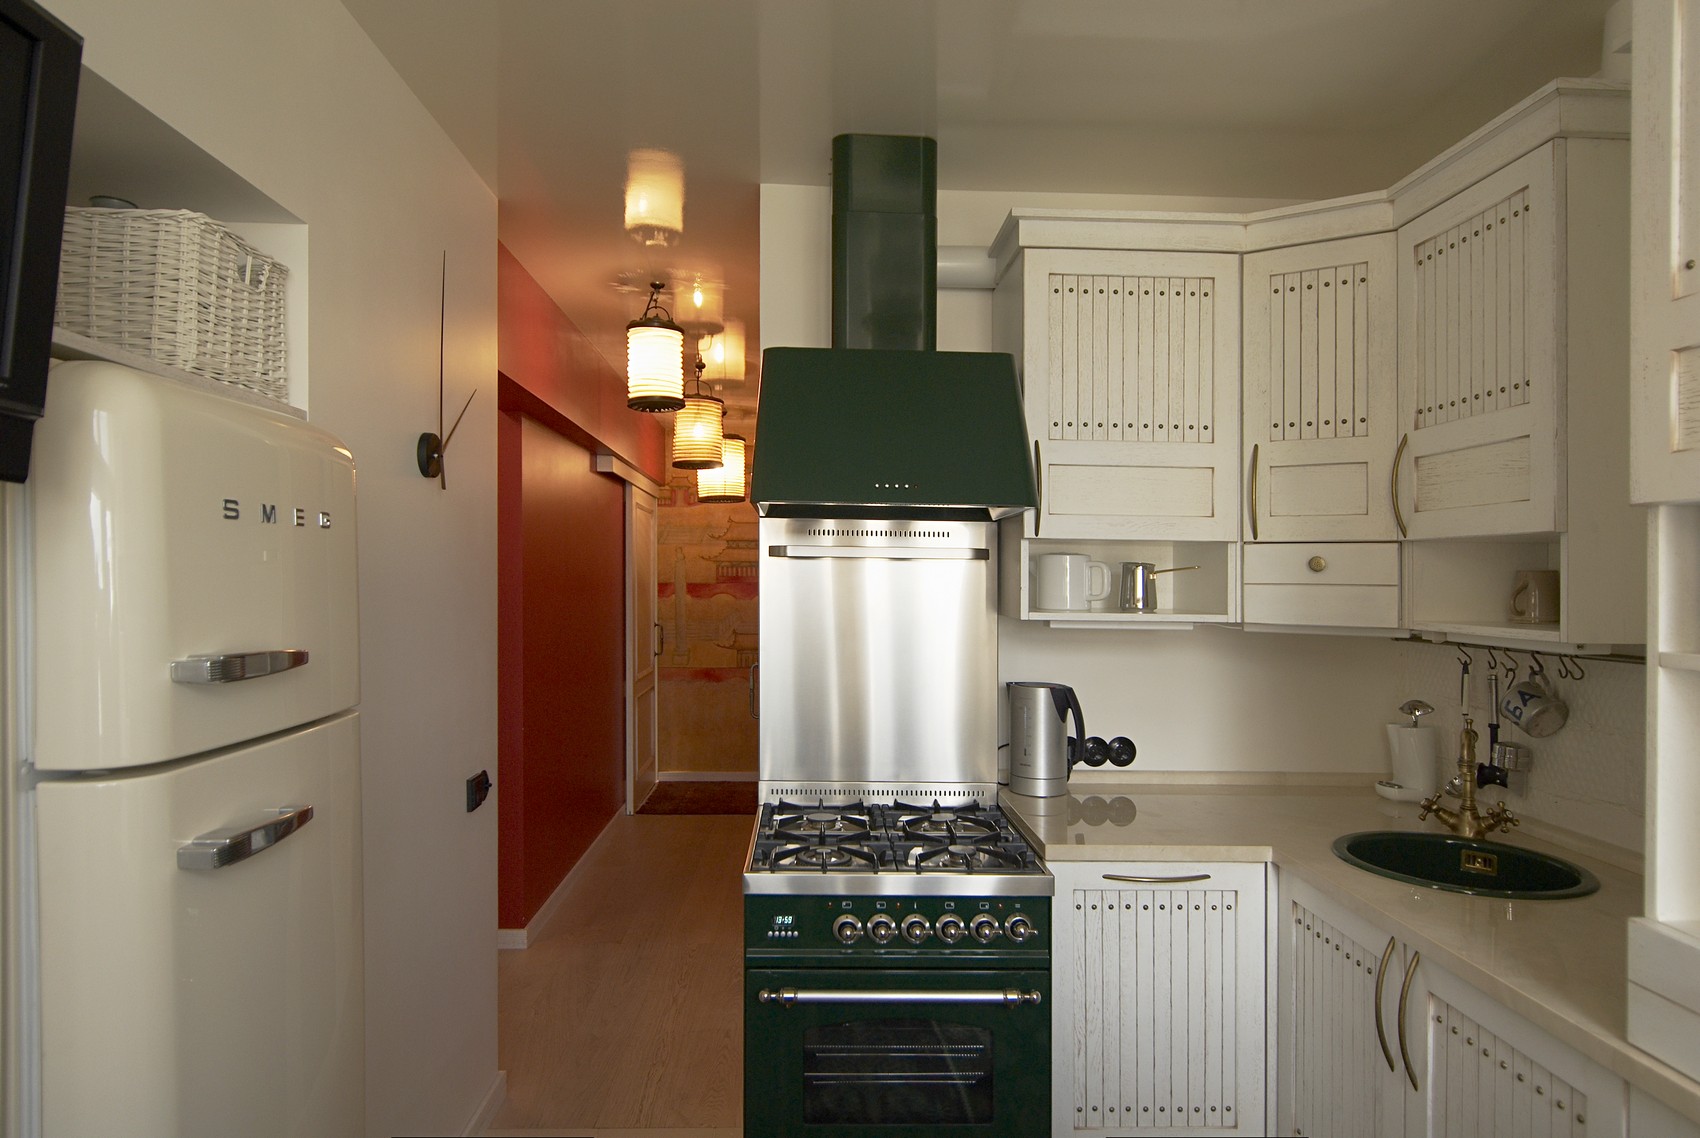 Кухонные угловые кухни в помещение 12 метров квадратных - 2